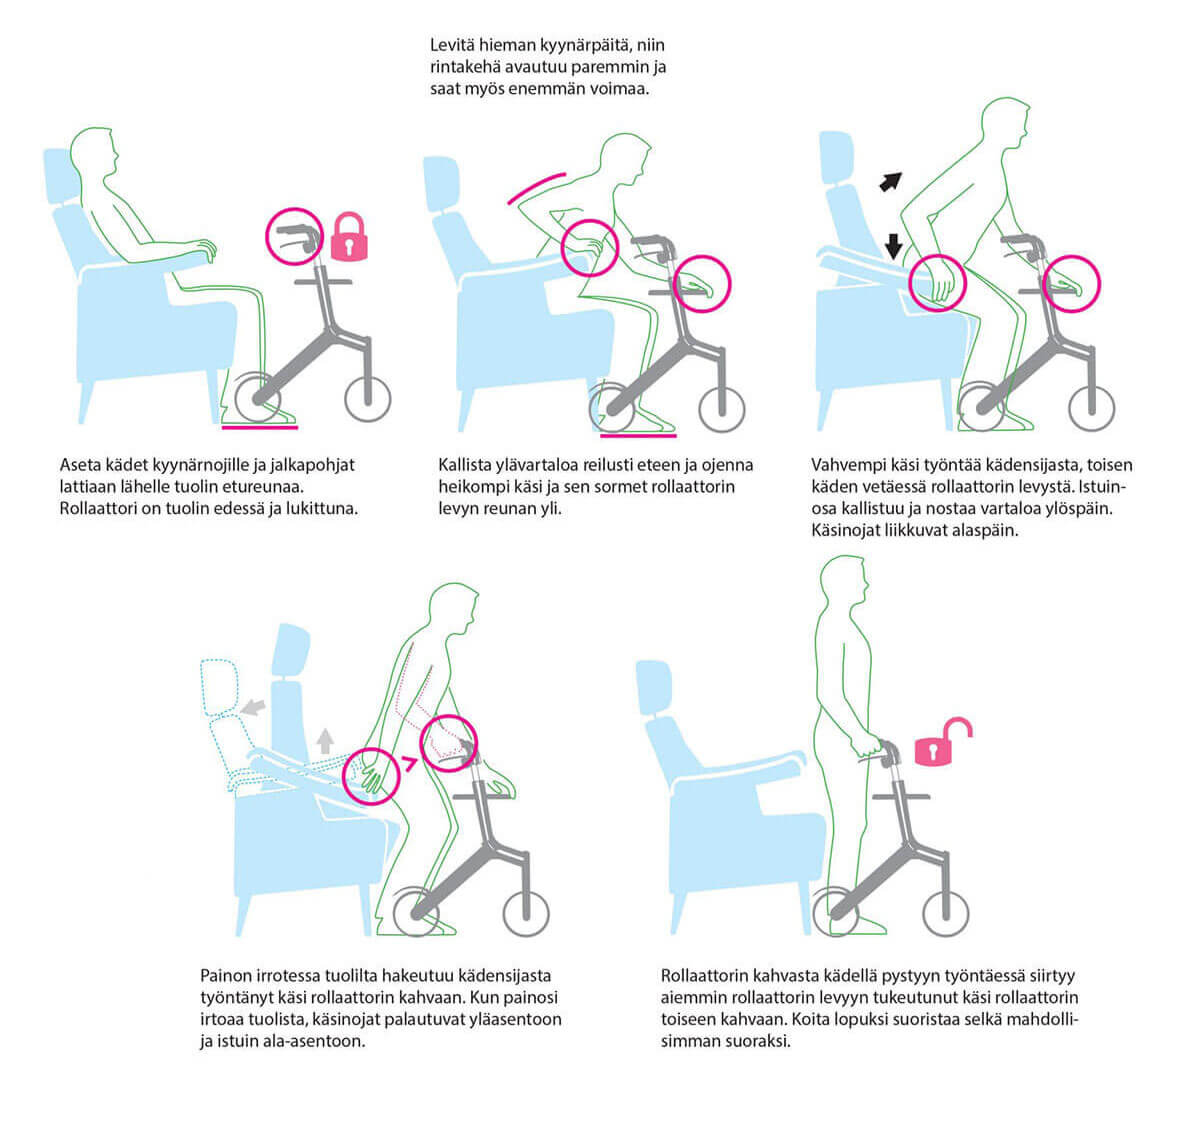 Armi tuolista rollaattoriin nousu yhdellä kädellä työntäen ja toisella rollaattorin tasosta vetäen